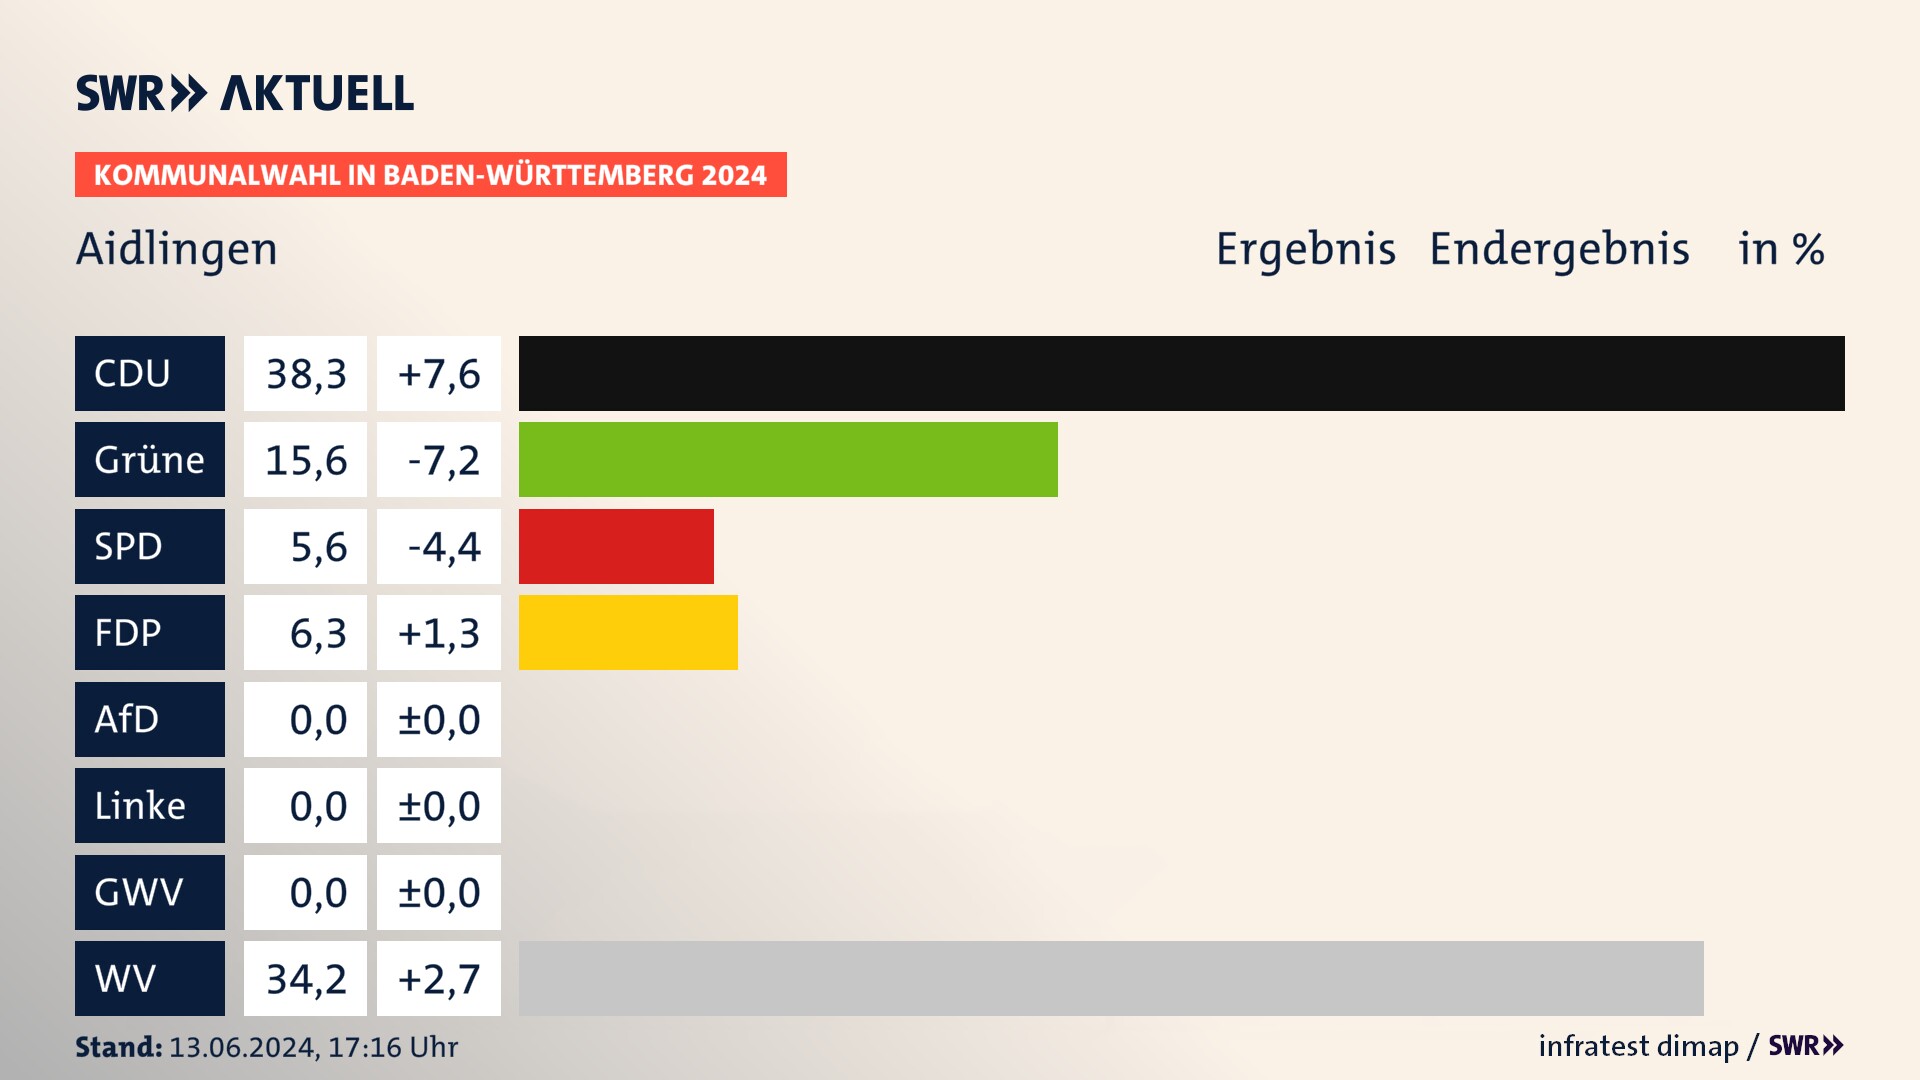 Kommunalwahl 2024 Endergebnis Zweitstimme für Aidlingen. In Aidlingen erzielt die CDU 38,3 Prozent der gültigen  Stimmen. Die Grünen landen bei 15,6 Prozent. Die SPD erreicht 5,6 Prozent. Die FDP kommt auf 6,3 Prozent. Die Wählervereinigungen landen bei 34,2 Prozent.